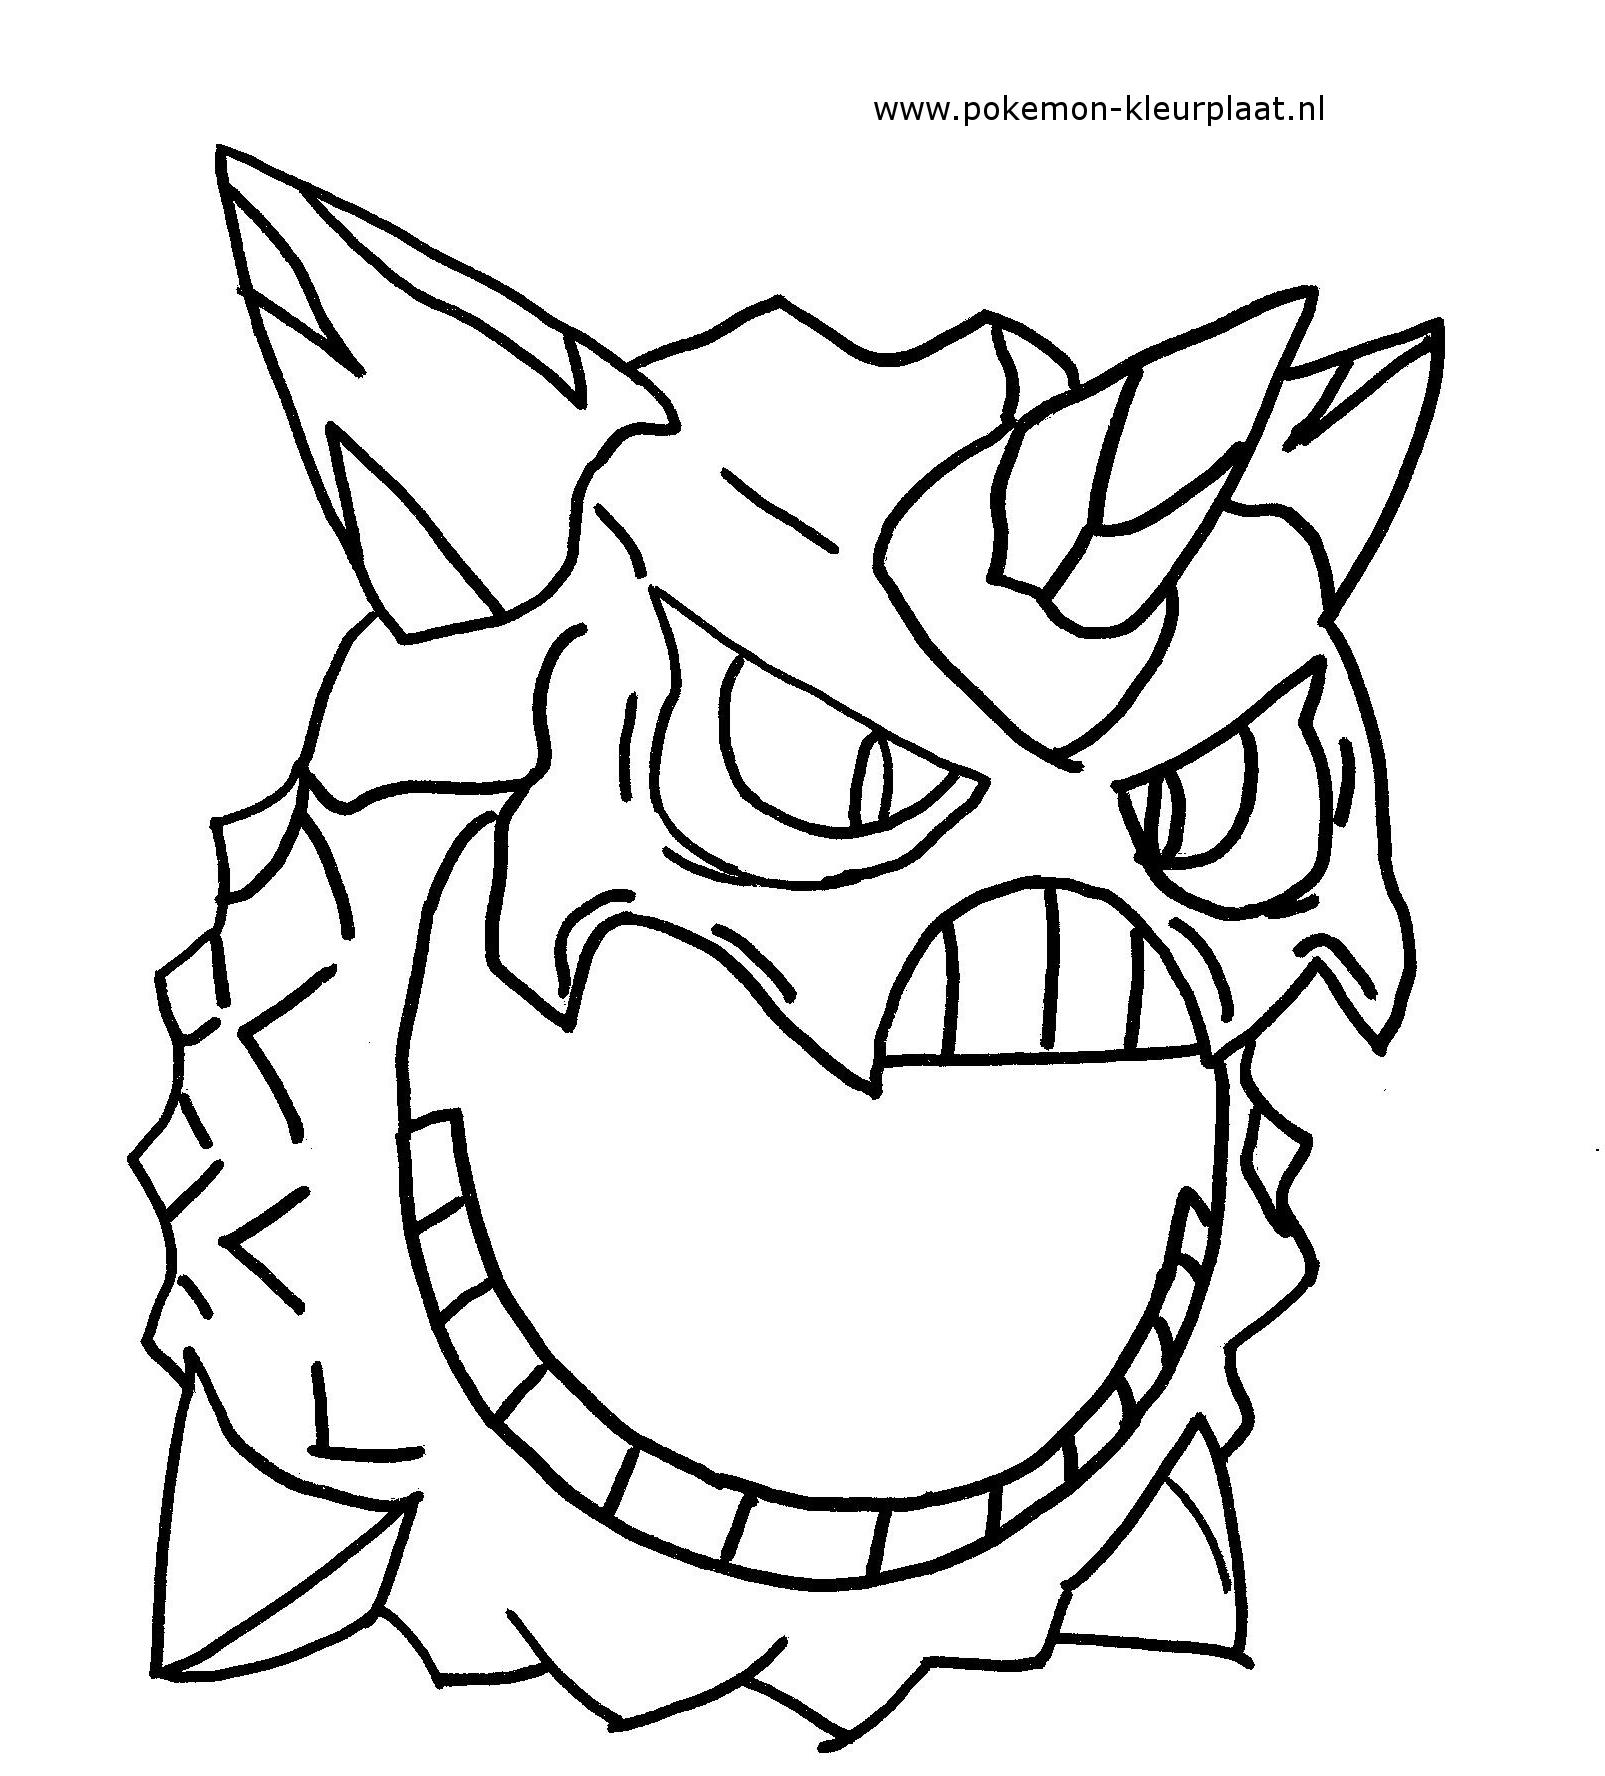 Mega Glalie  Pokémon Fan Art 37759405  Fanpop